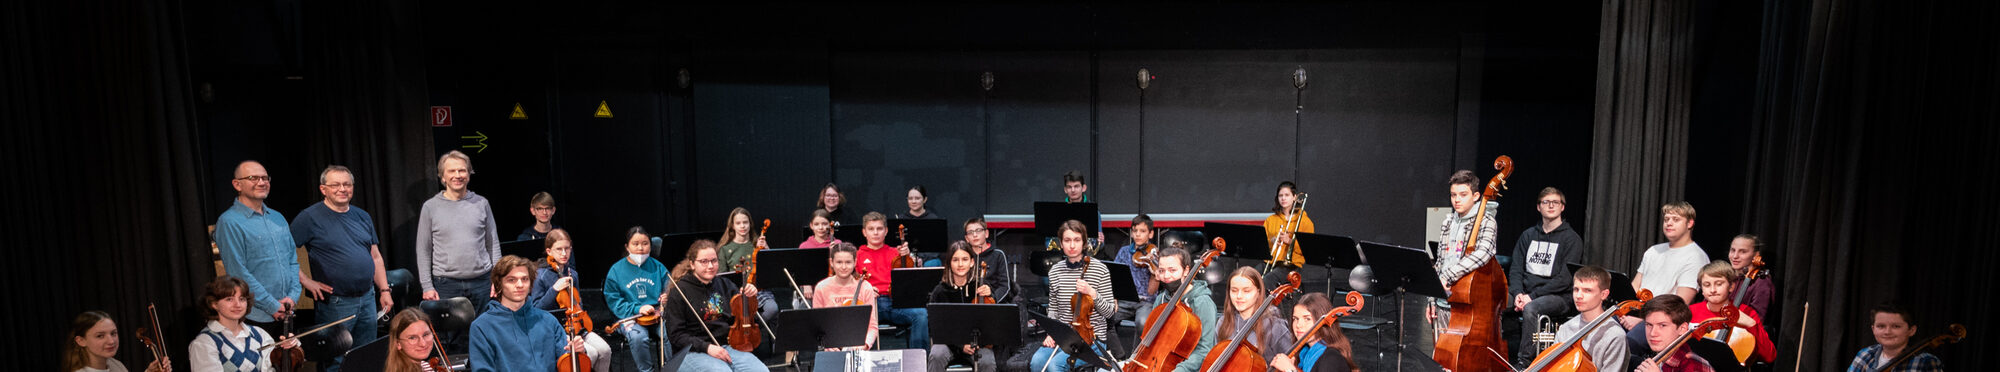 Die Mitglieder der Rhein-Erft-Philharmonie sitzen und stehen mit ihren Instrumenten auf einer Bühne.